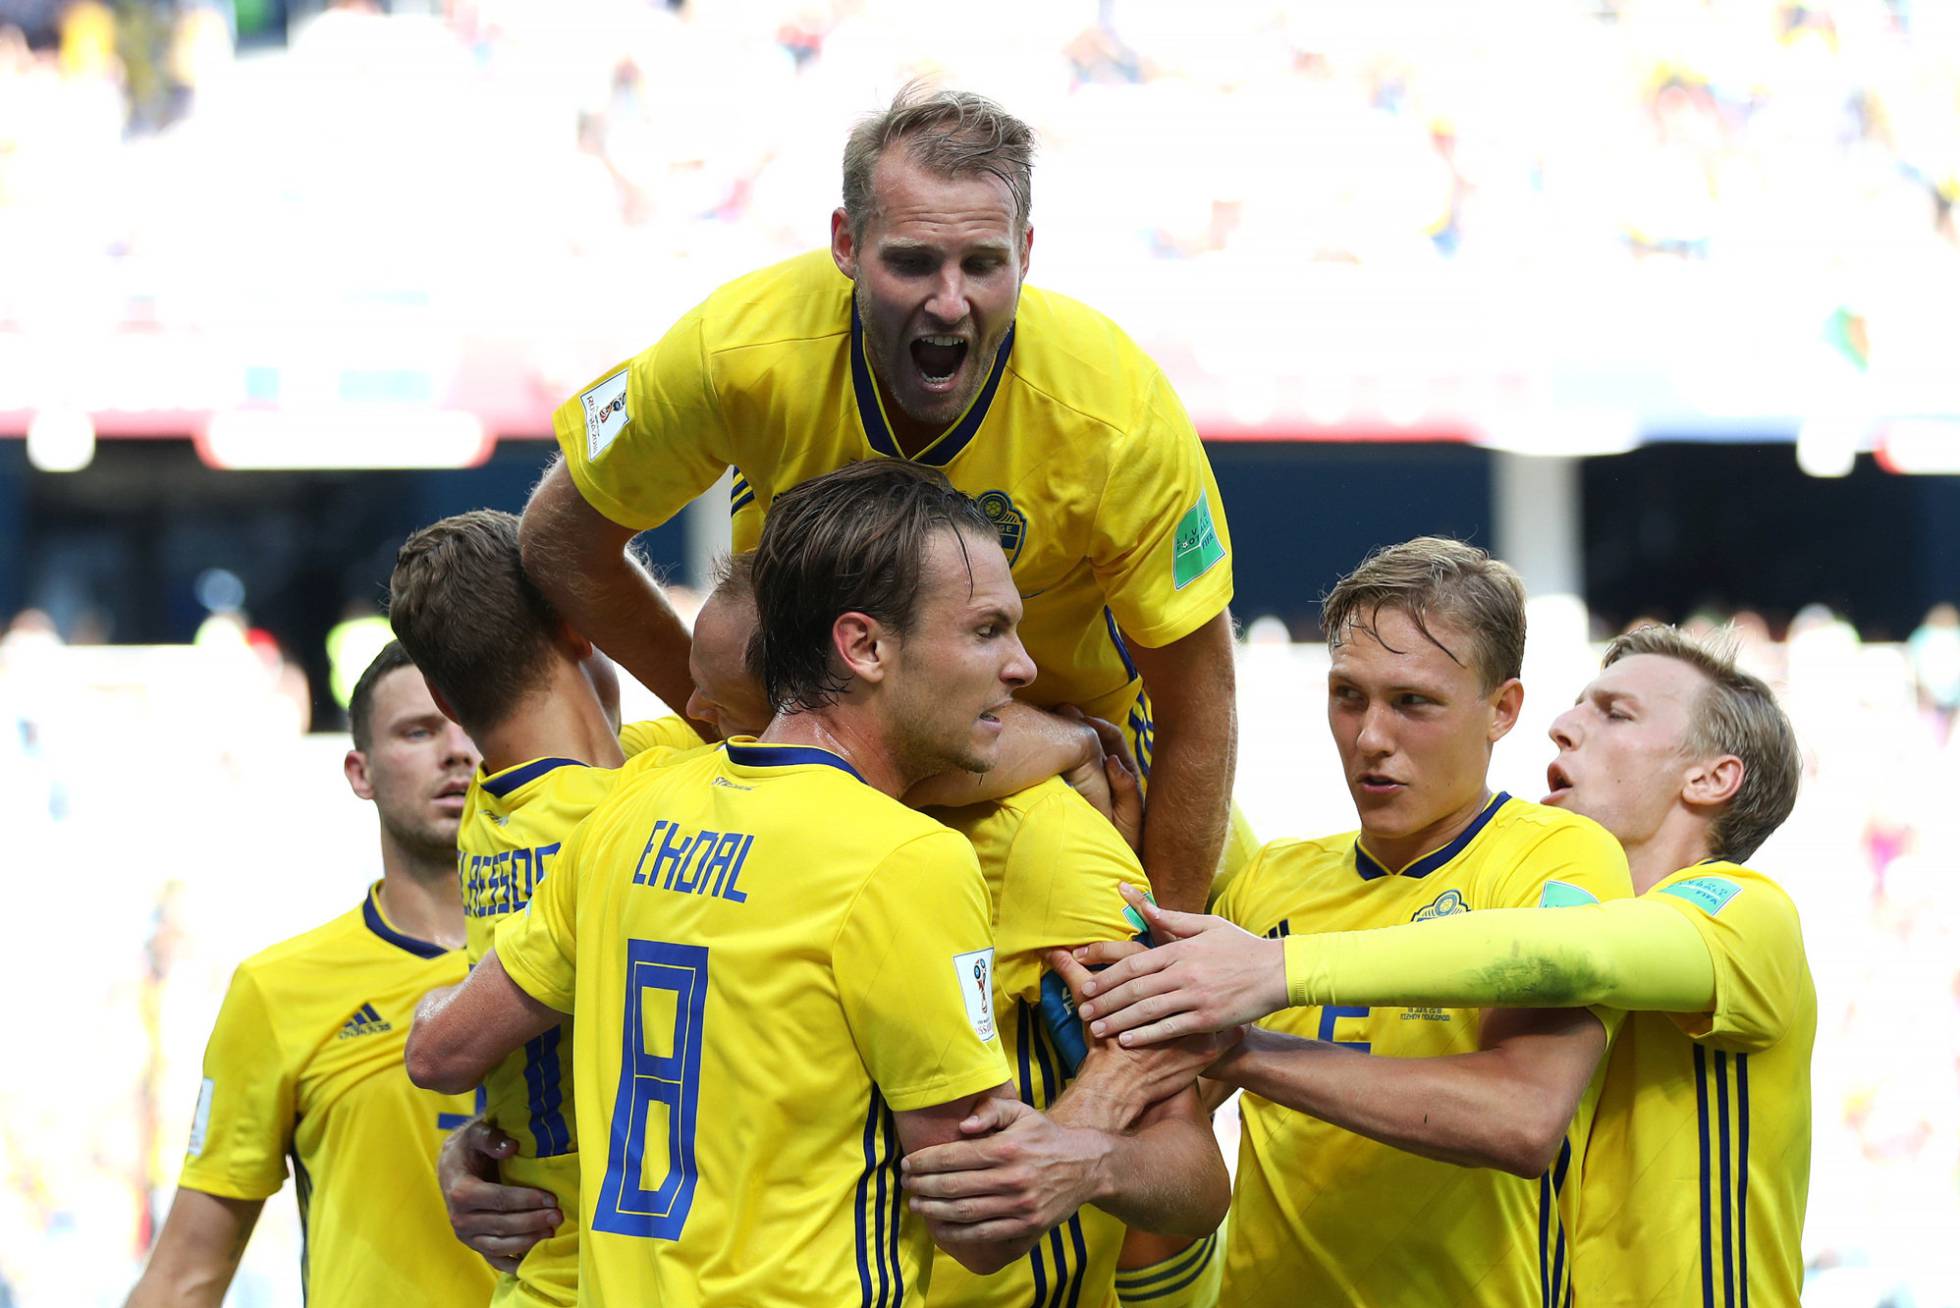 Suécia derrota a Coreia com a ajuda do árbitro de vídeo